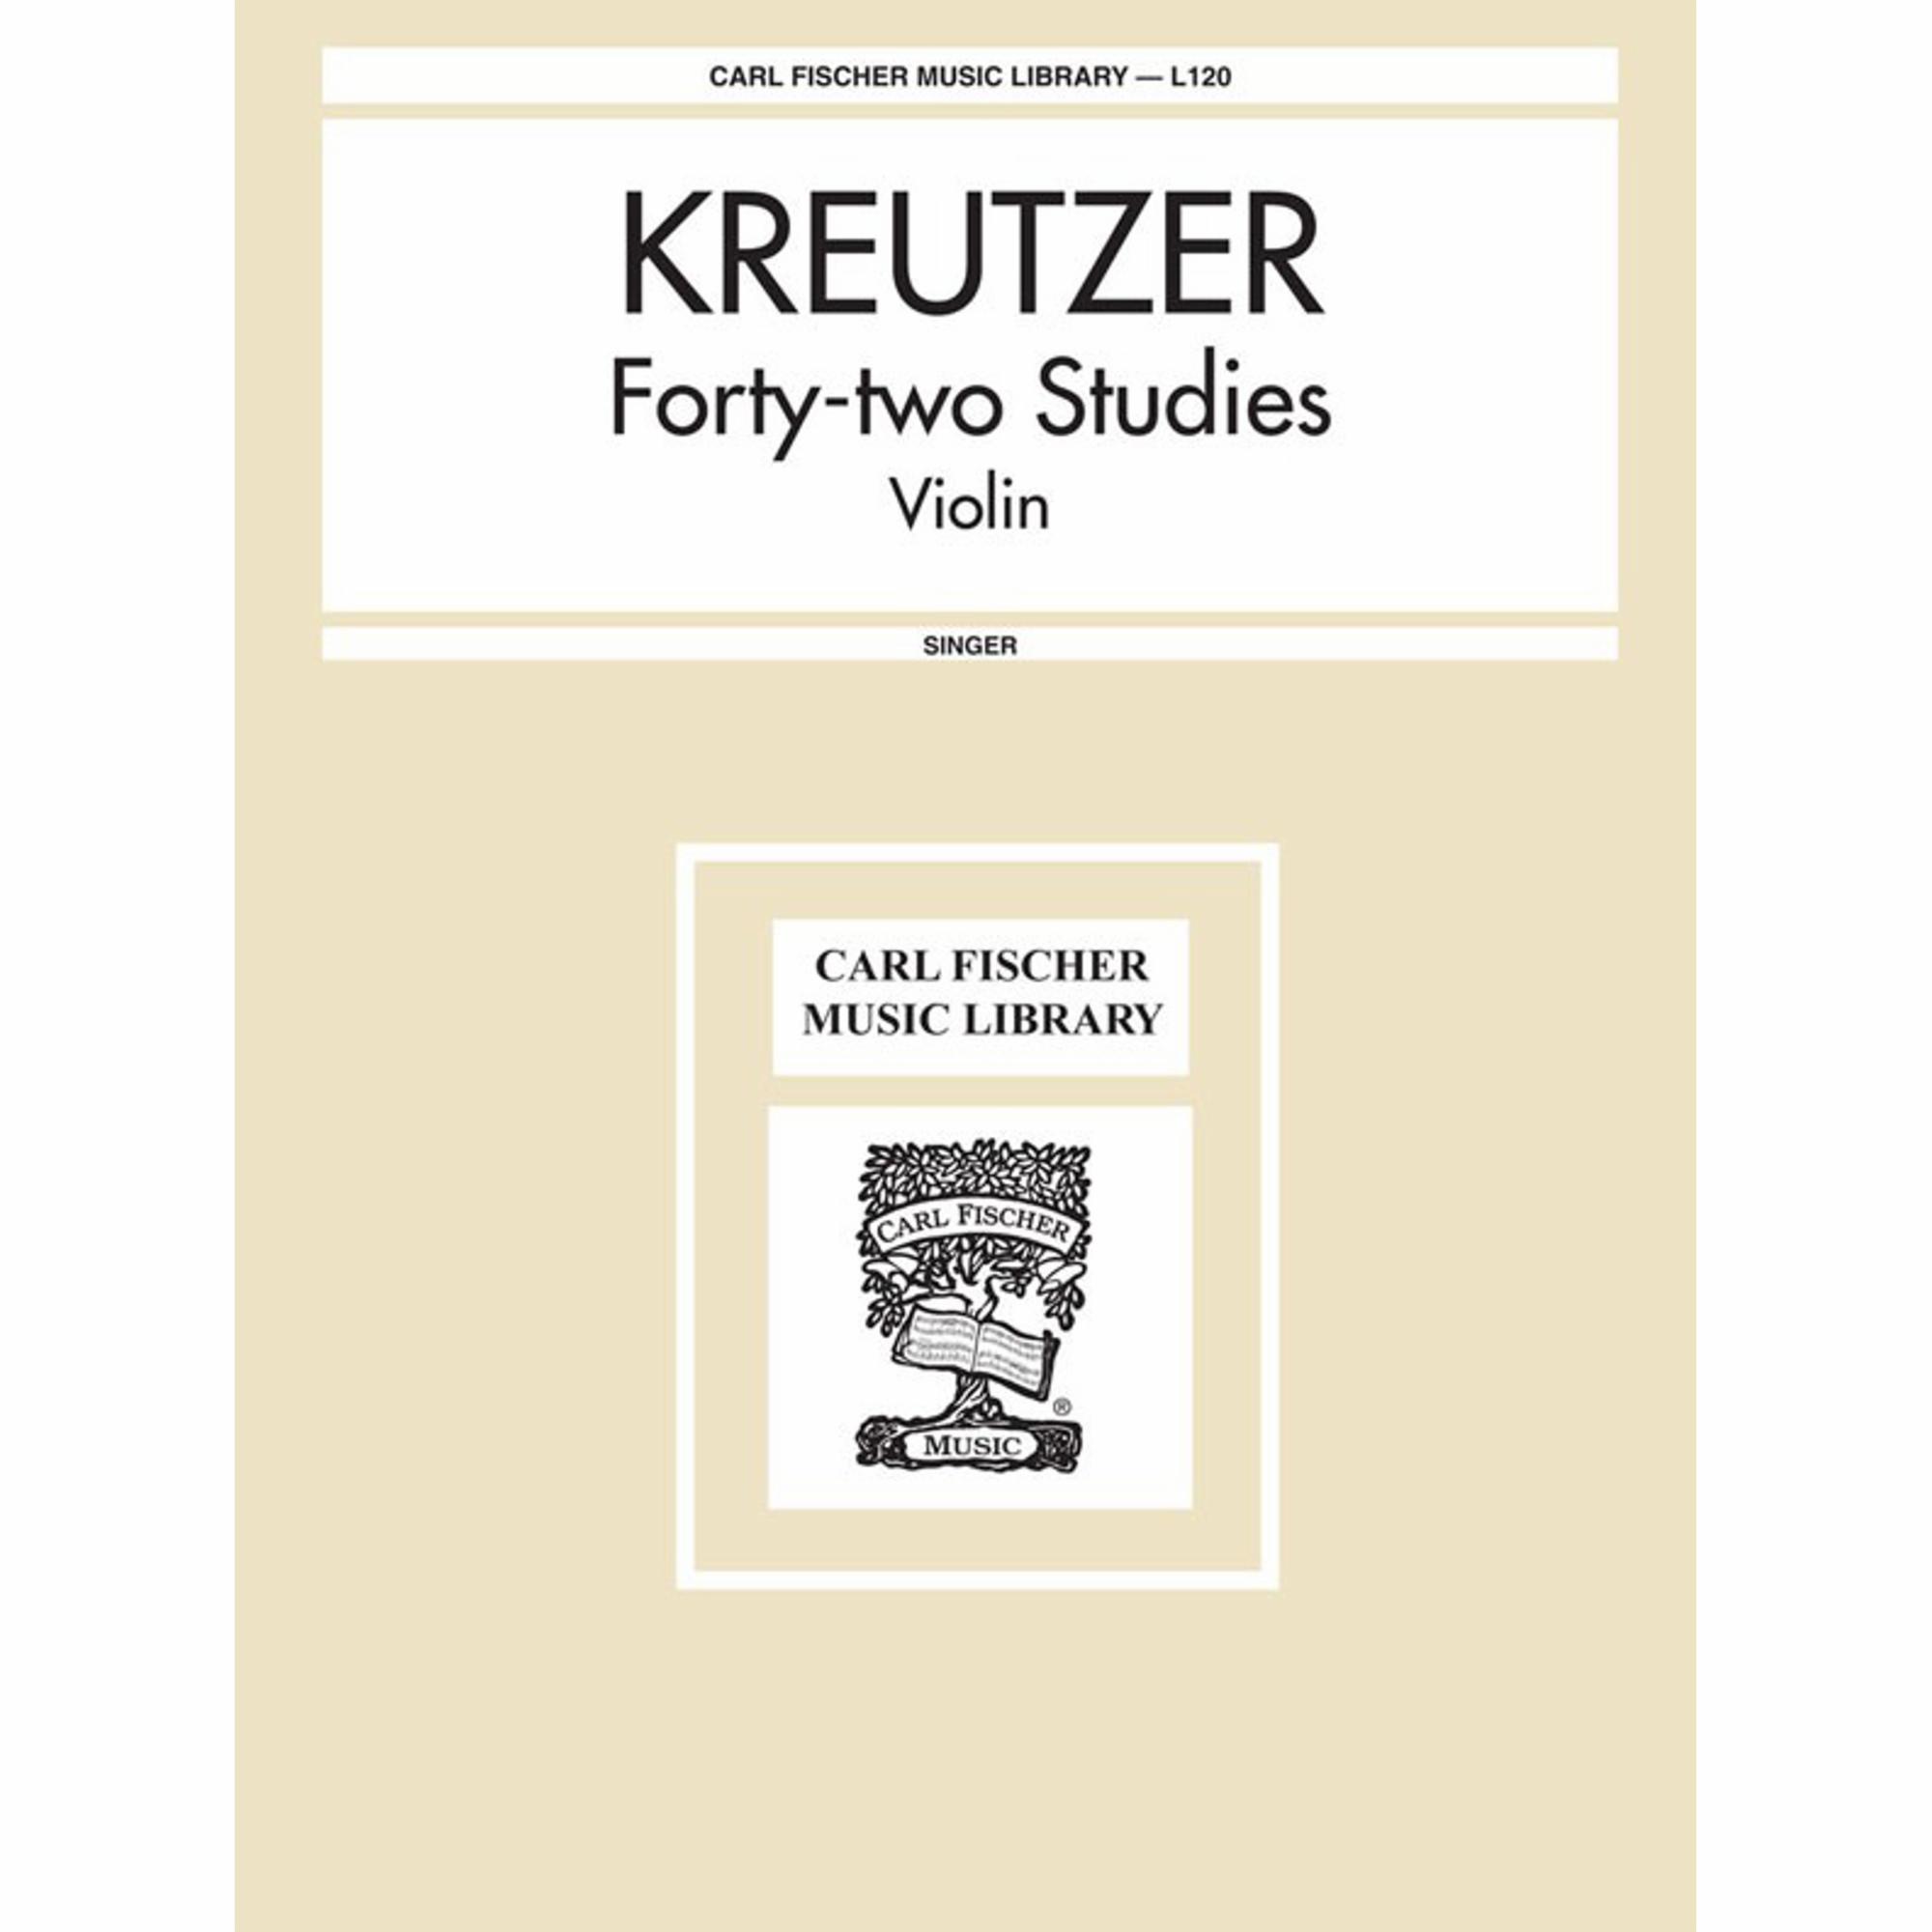 Kreutzer -- Forty-Two Studies for Violin